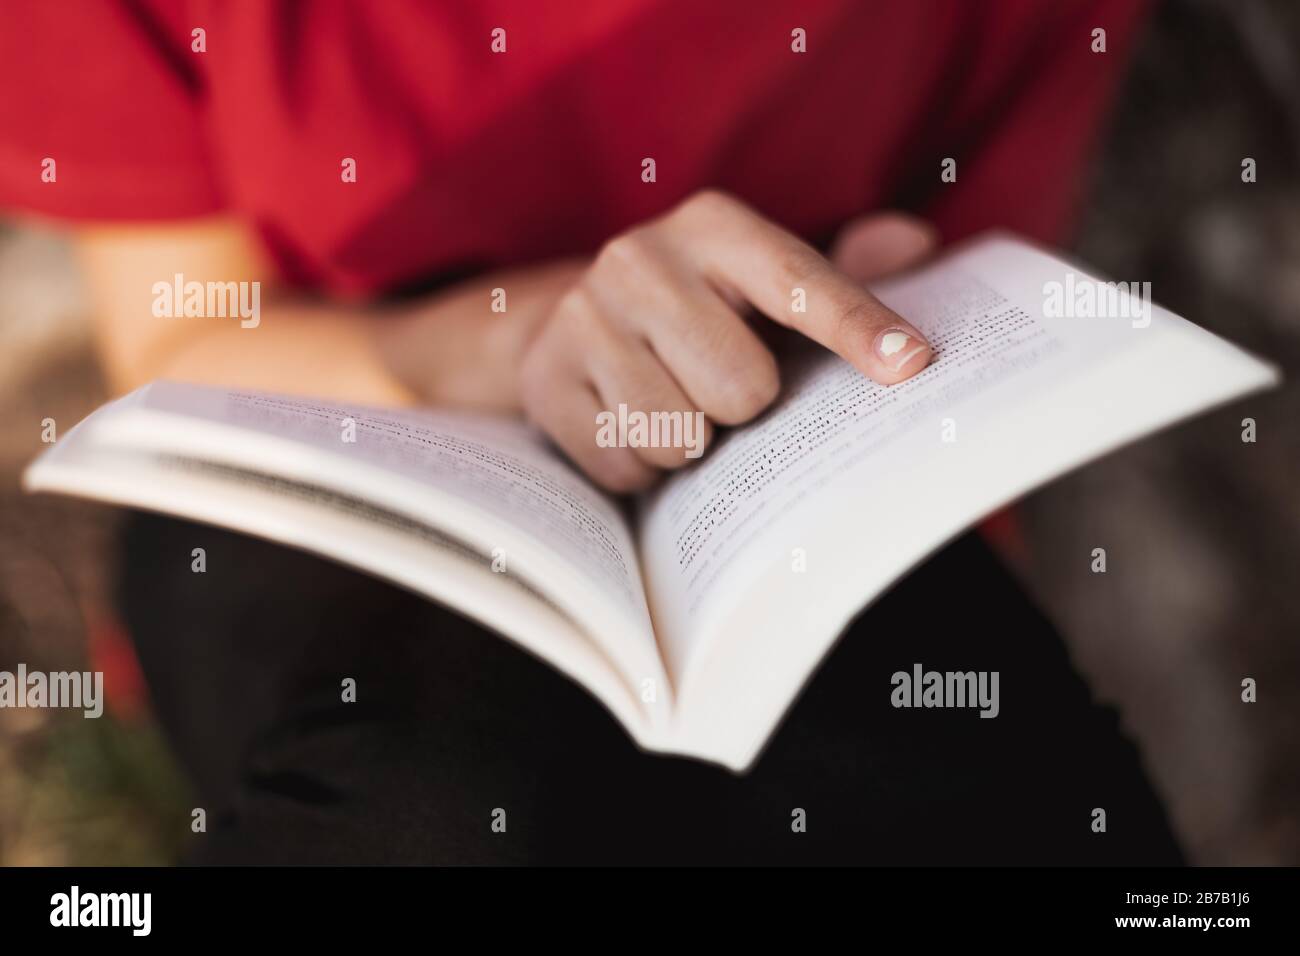 Nahaufnahme eines offenen Buches direkt in der Mitte von einer jungen Frau, die mit dem Finger in ein Wort der Seite zeigt. Geringe Schärfentiefe. Stockfoto